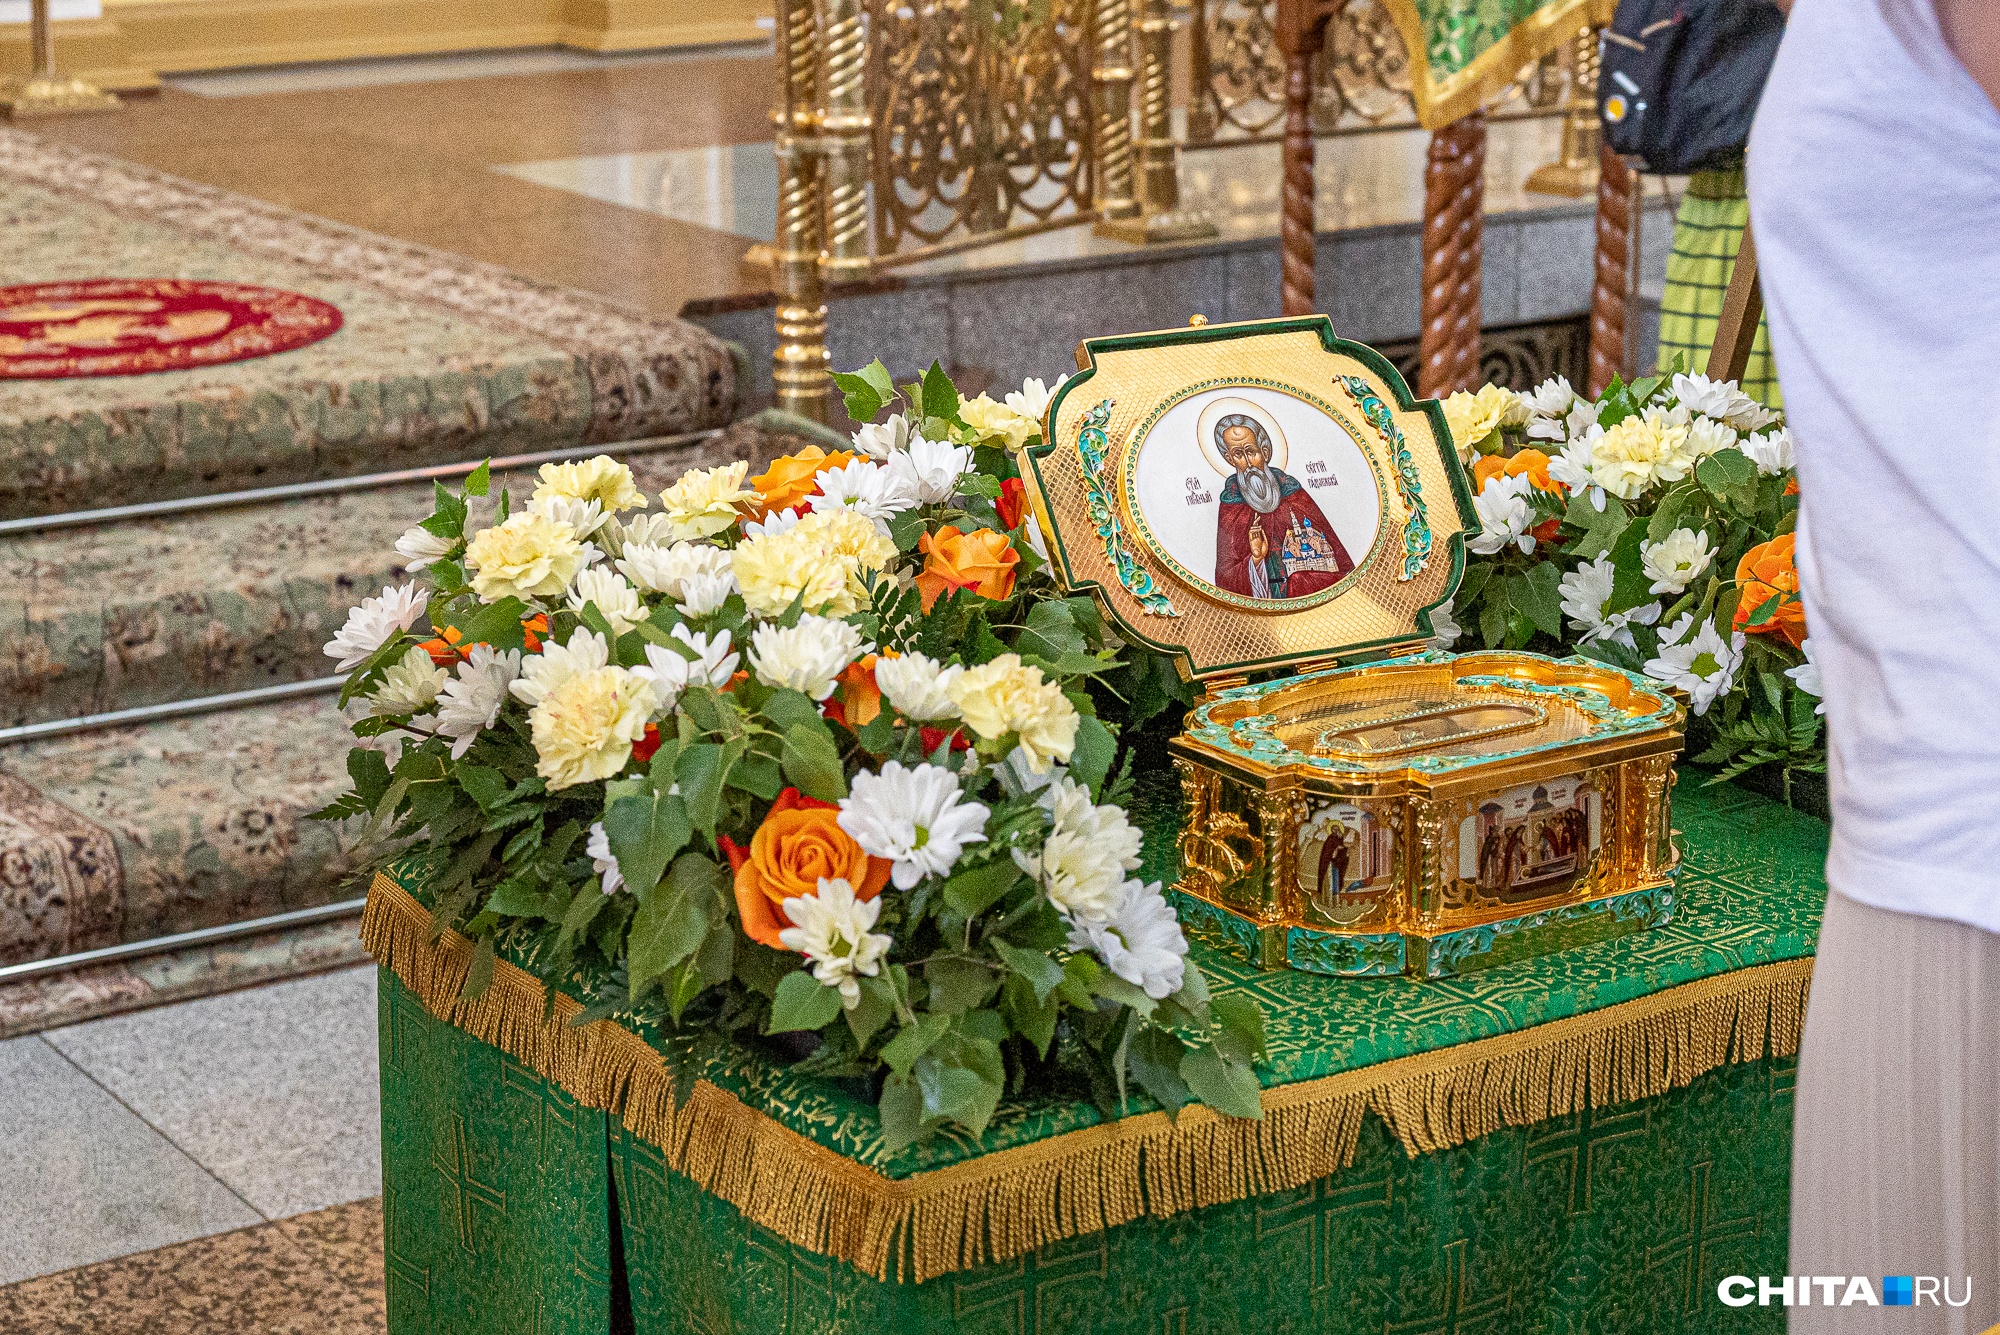 Ковчег с частью святых мощей преподобного Сергия Радонежского